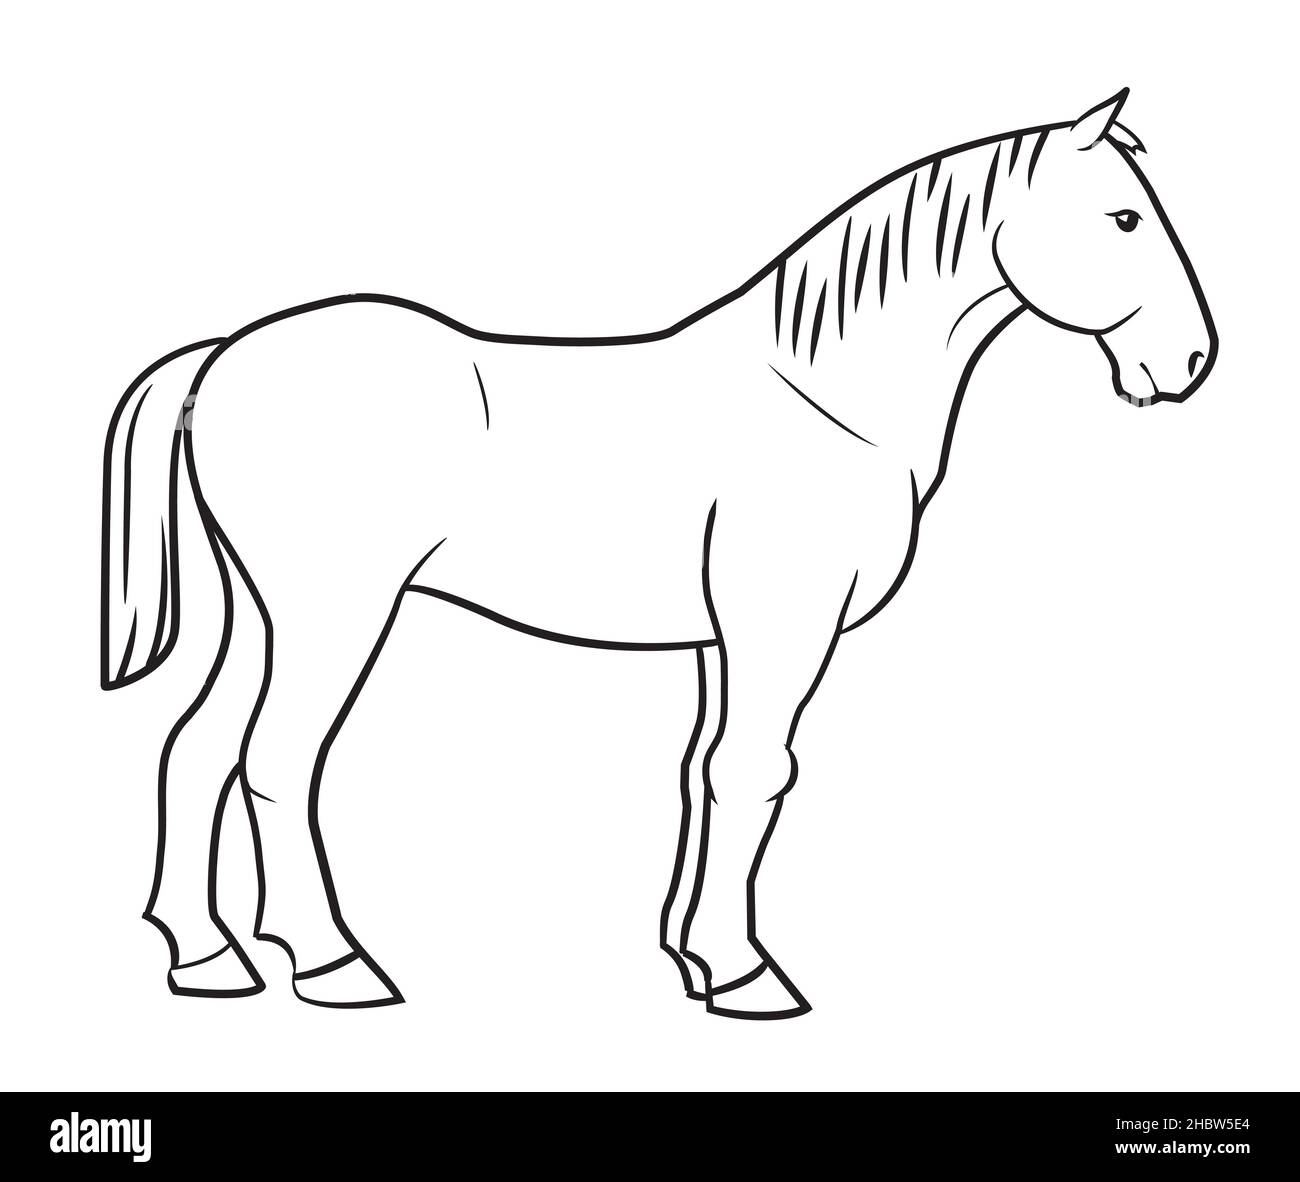 Dessin de cheval simple contour de l'illustration. Illustration de Vecteur